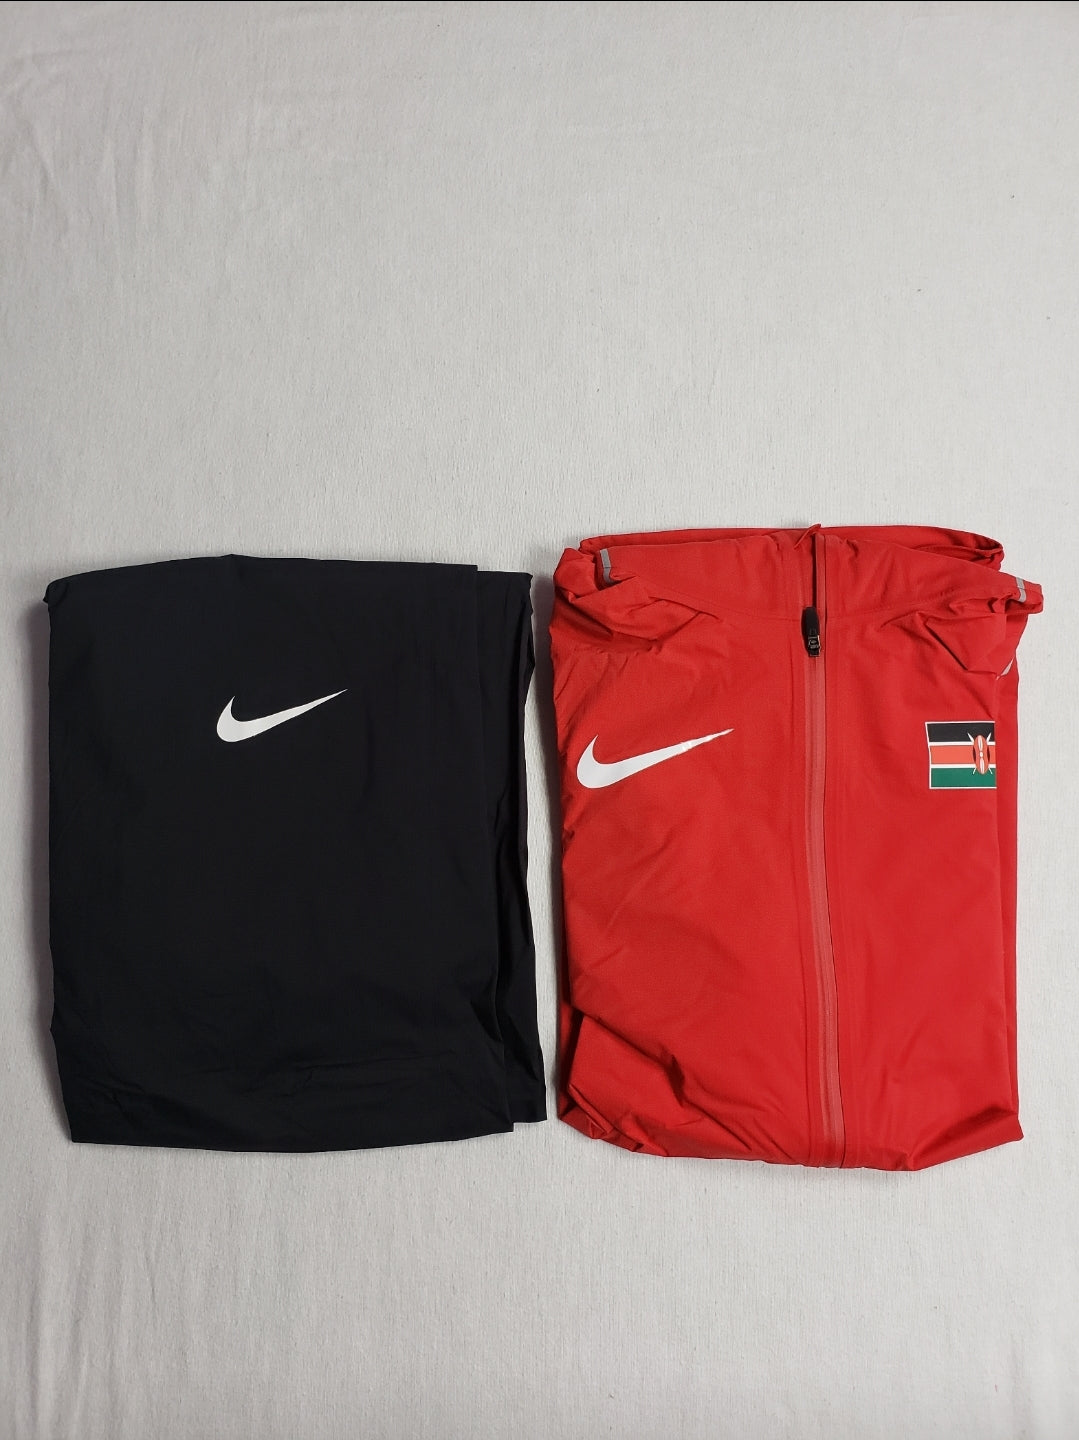 Nike Pro Elite Kenya Olympic Tracksuit  brand